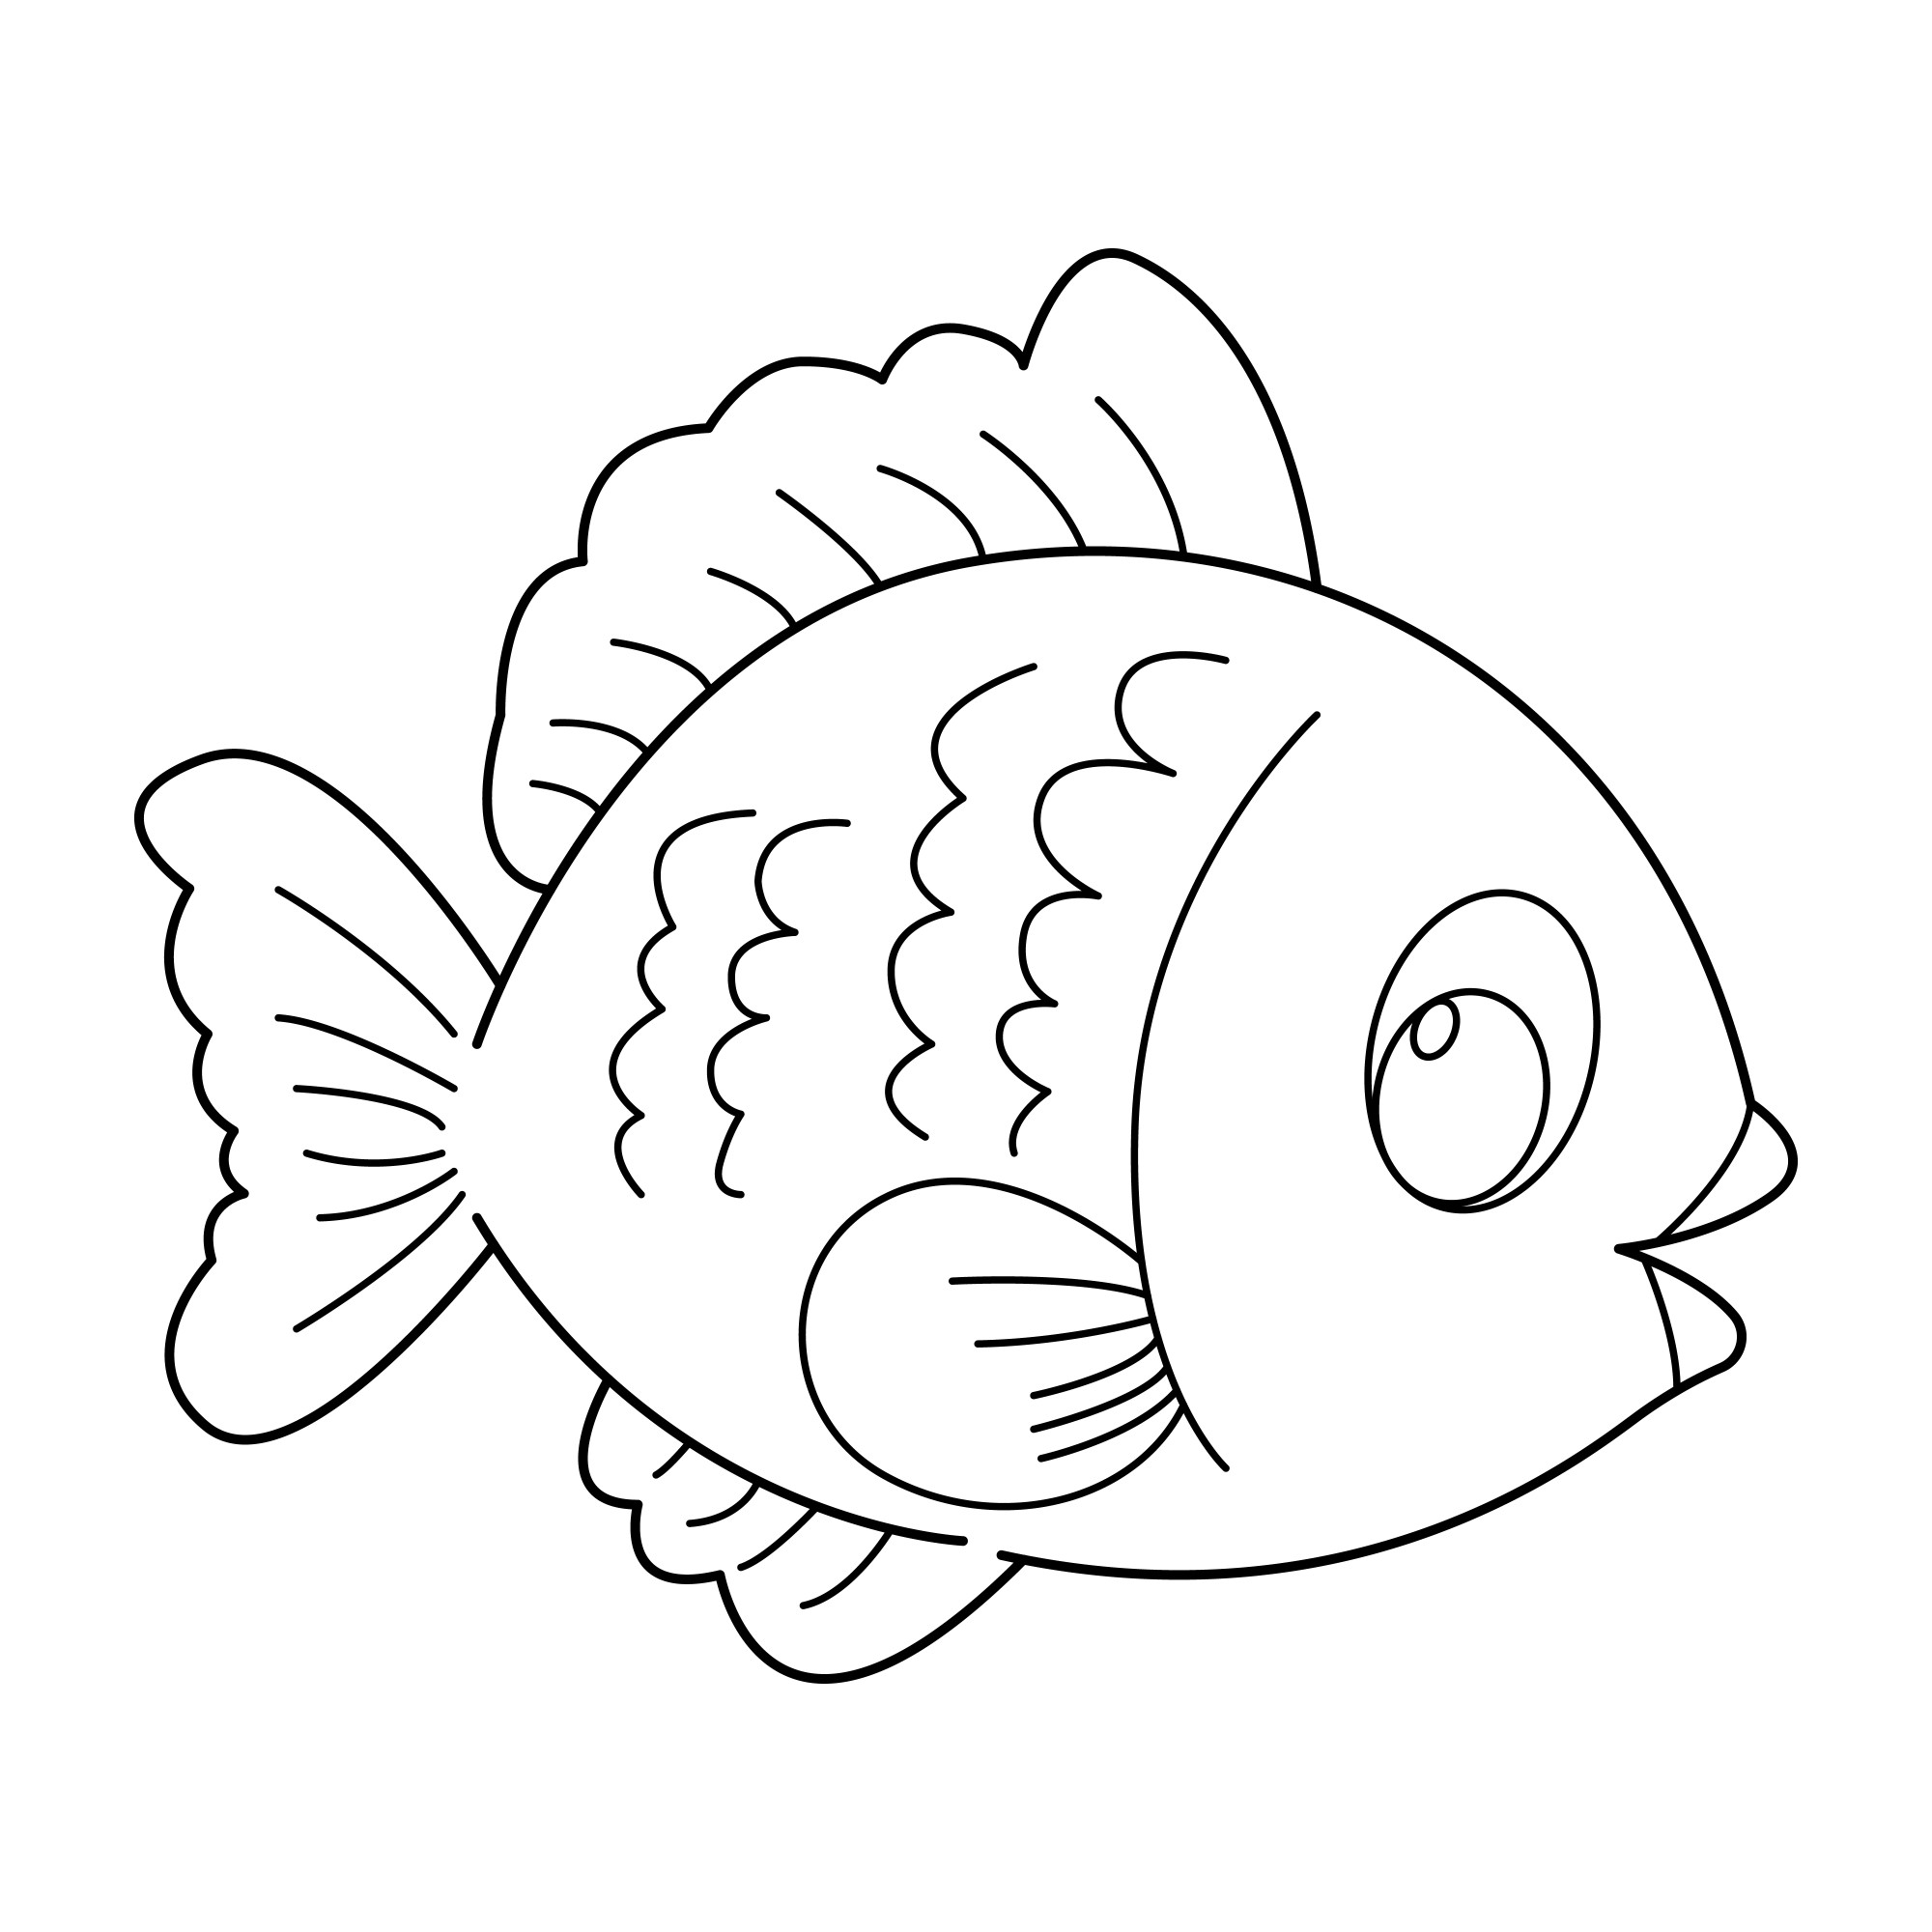 Раскраска для детей: рыба с красивыми плавниками